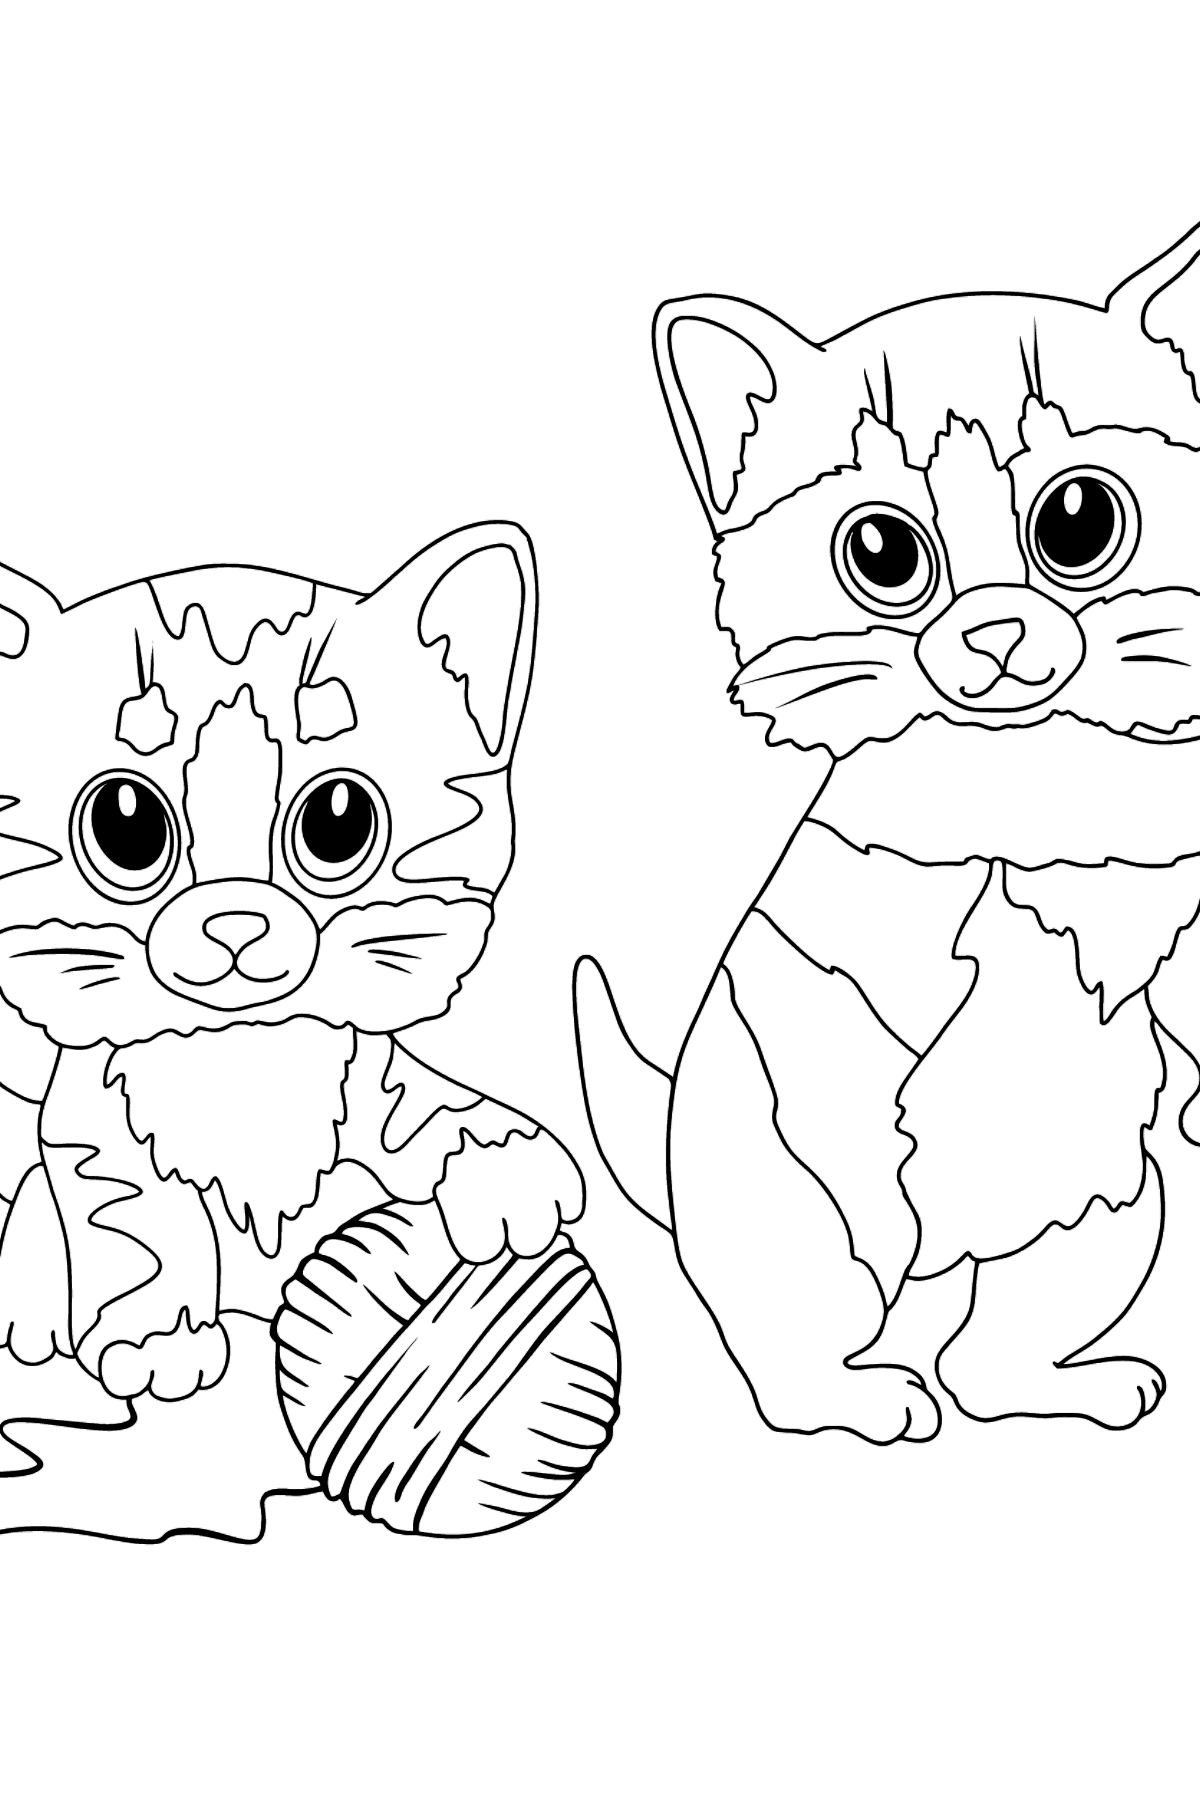 Boyama sayfası komik kedi yavruları (zor) - Boyamalar çocuklar için